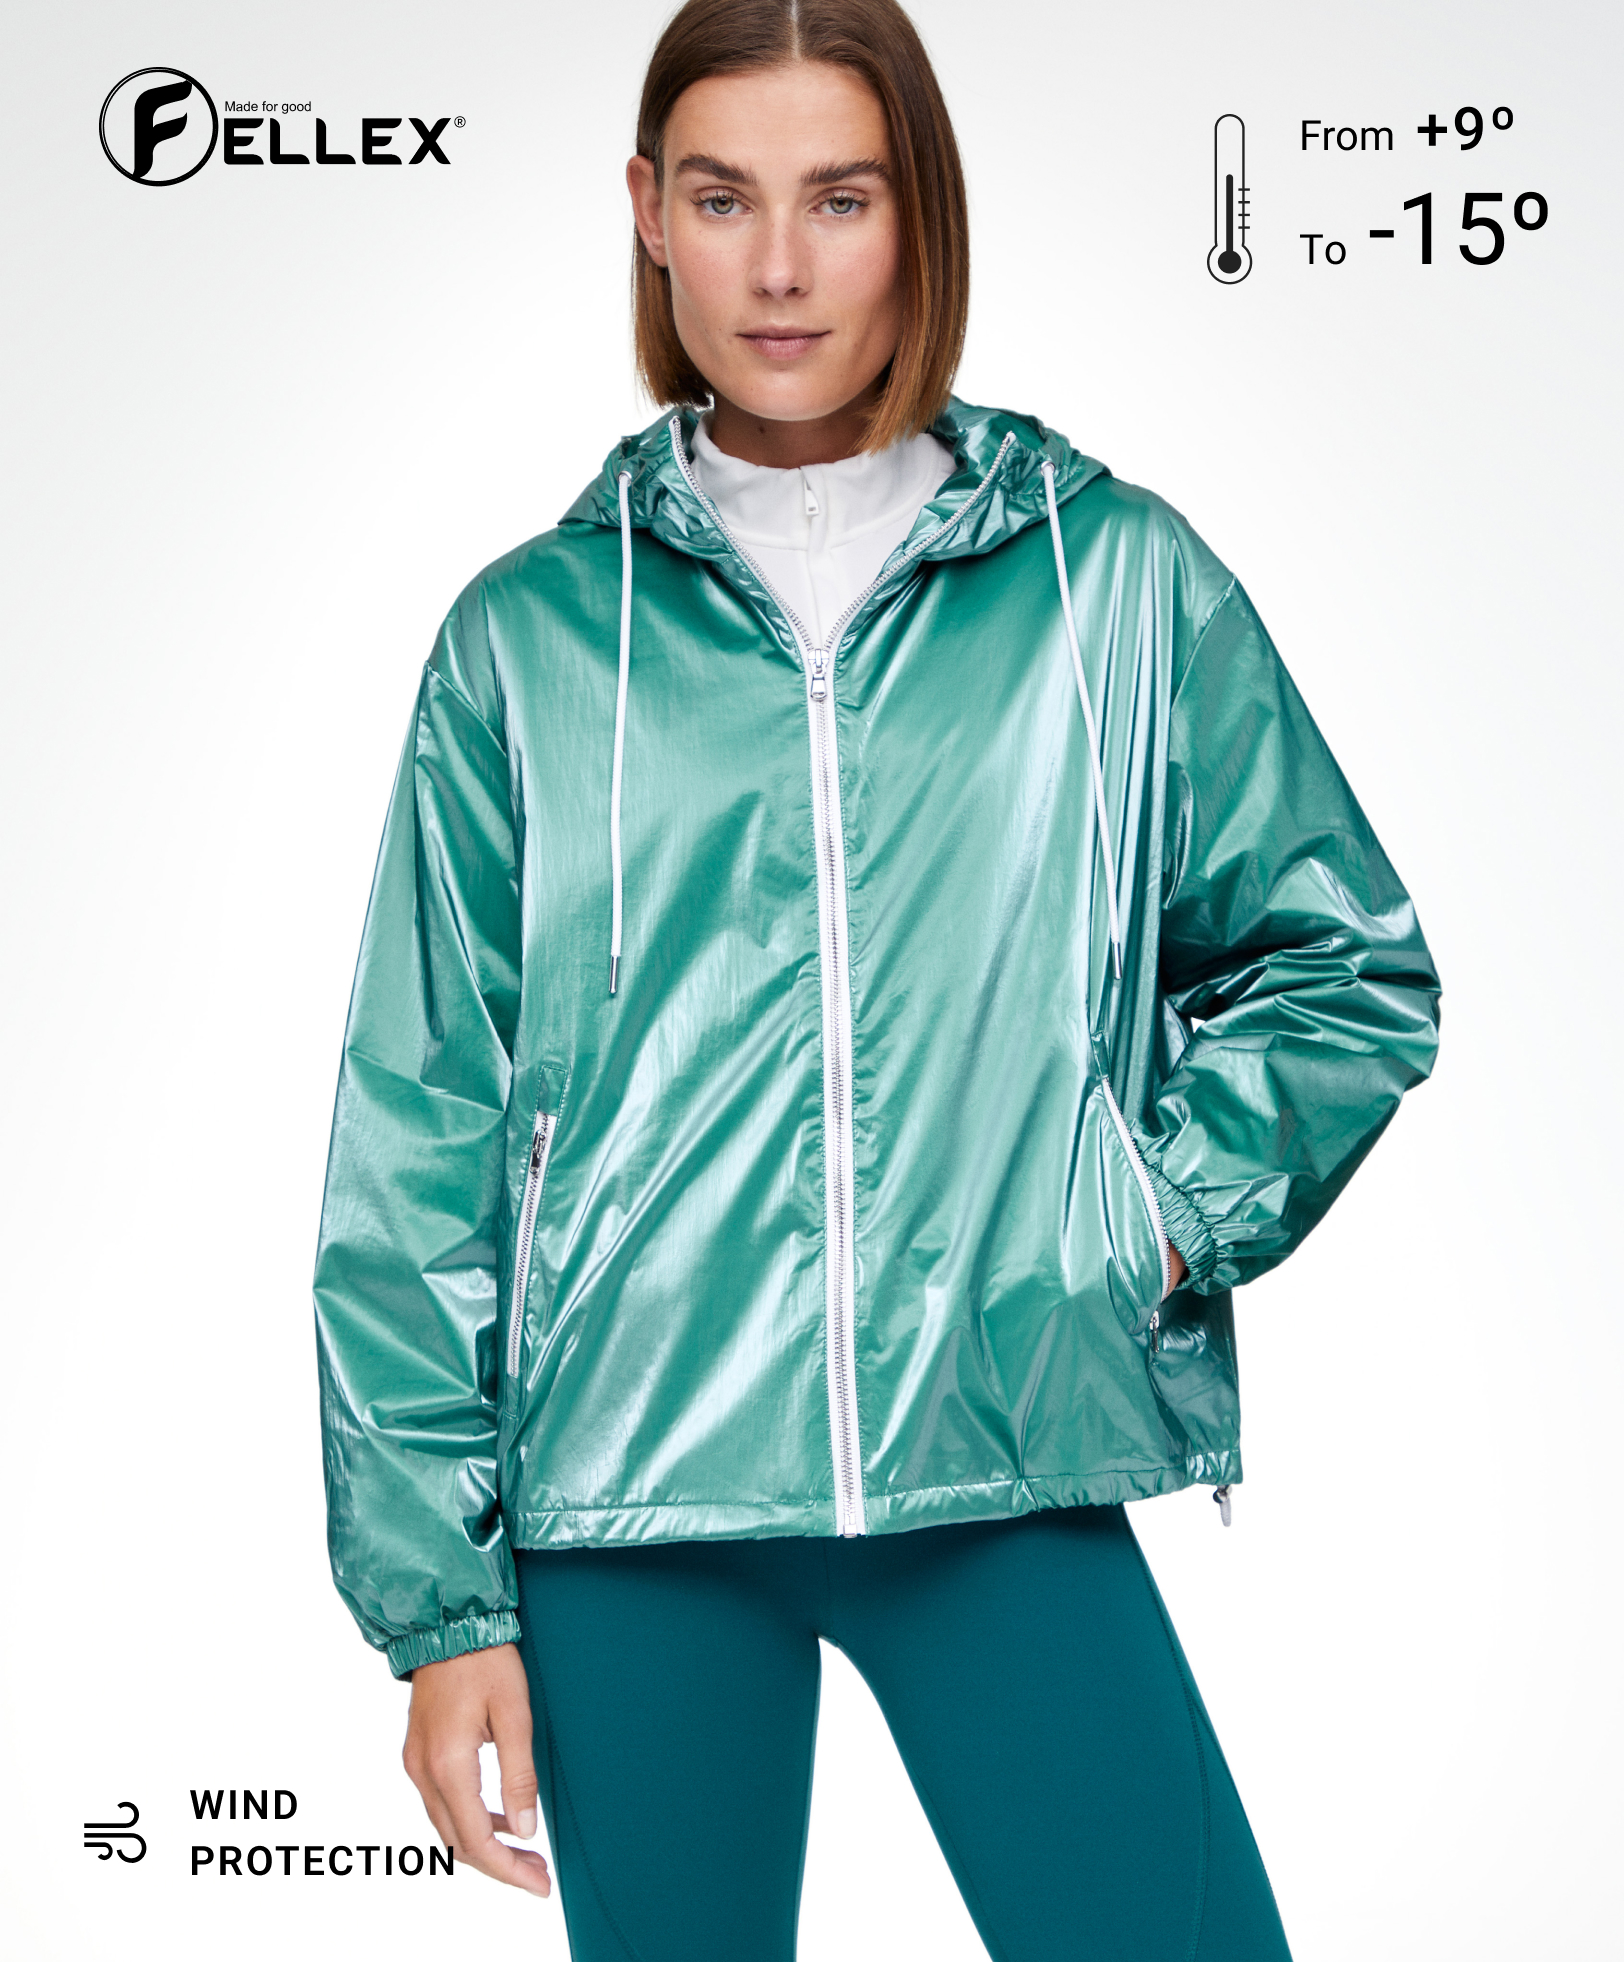 FELLEX® AEROGEL padded jacket